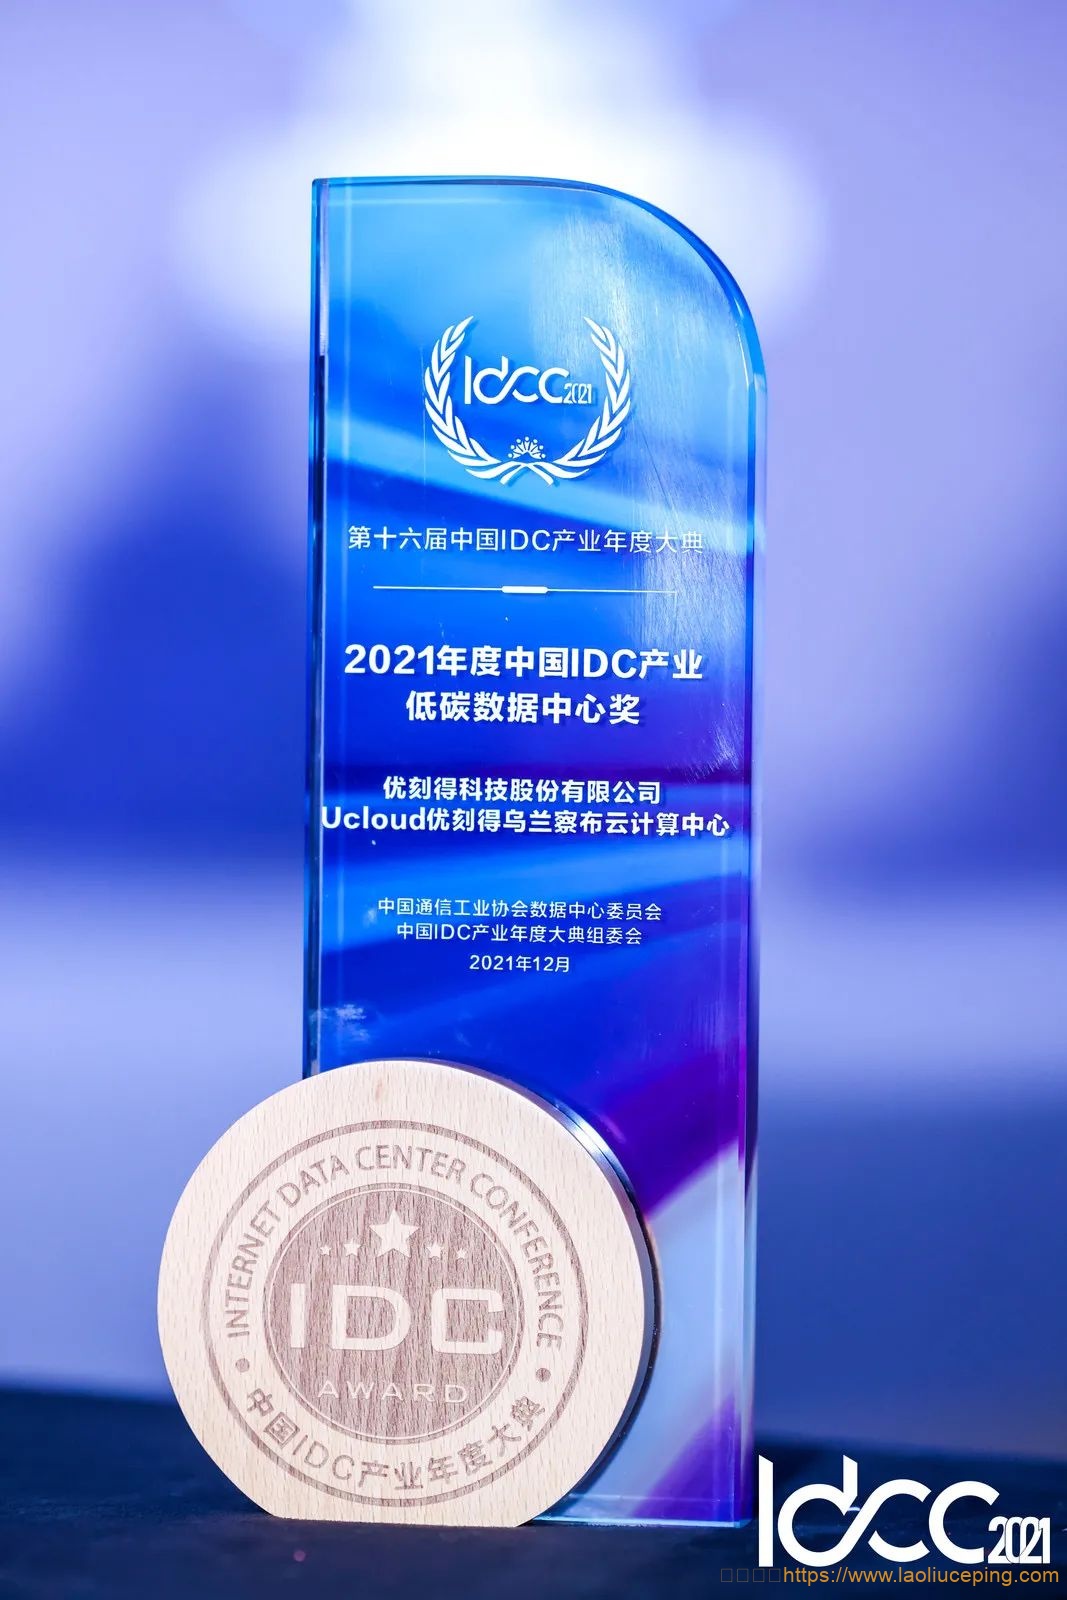 UCloud优刻得乌兰察布云计算中心荣获“2021 年度中国 IDC 产业低碳数据中心奖”